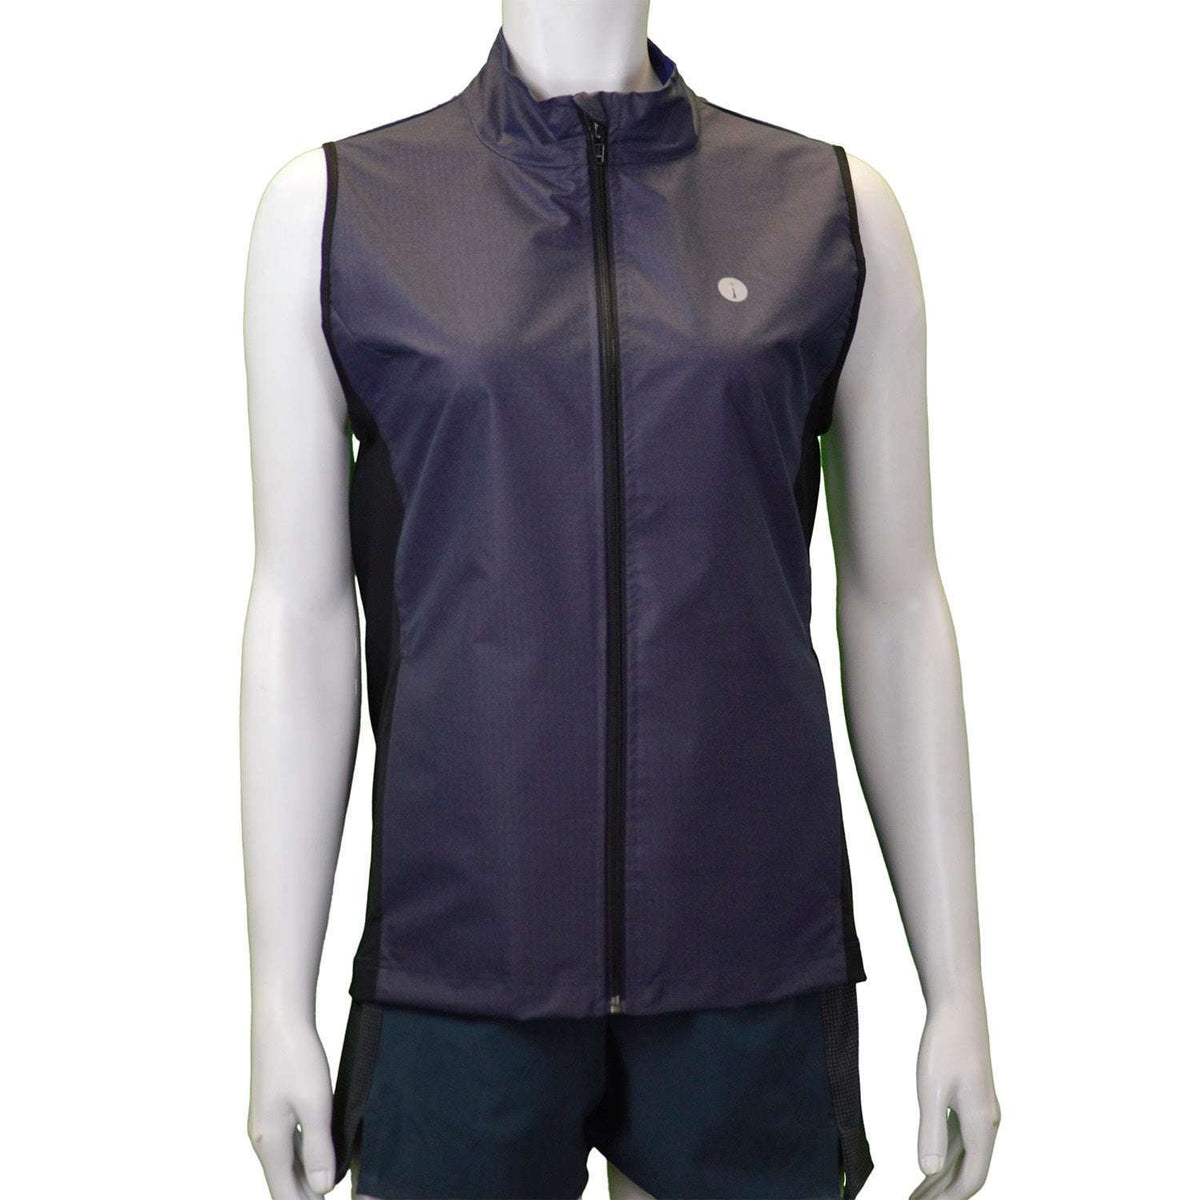 Women's Newport Packable Reflective Vest in Dark Purple Shimmer